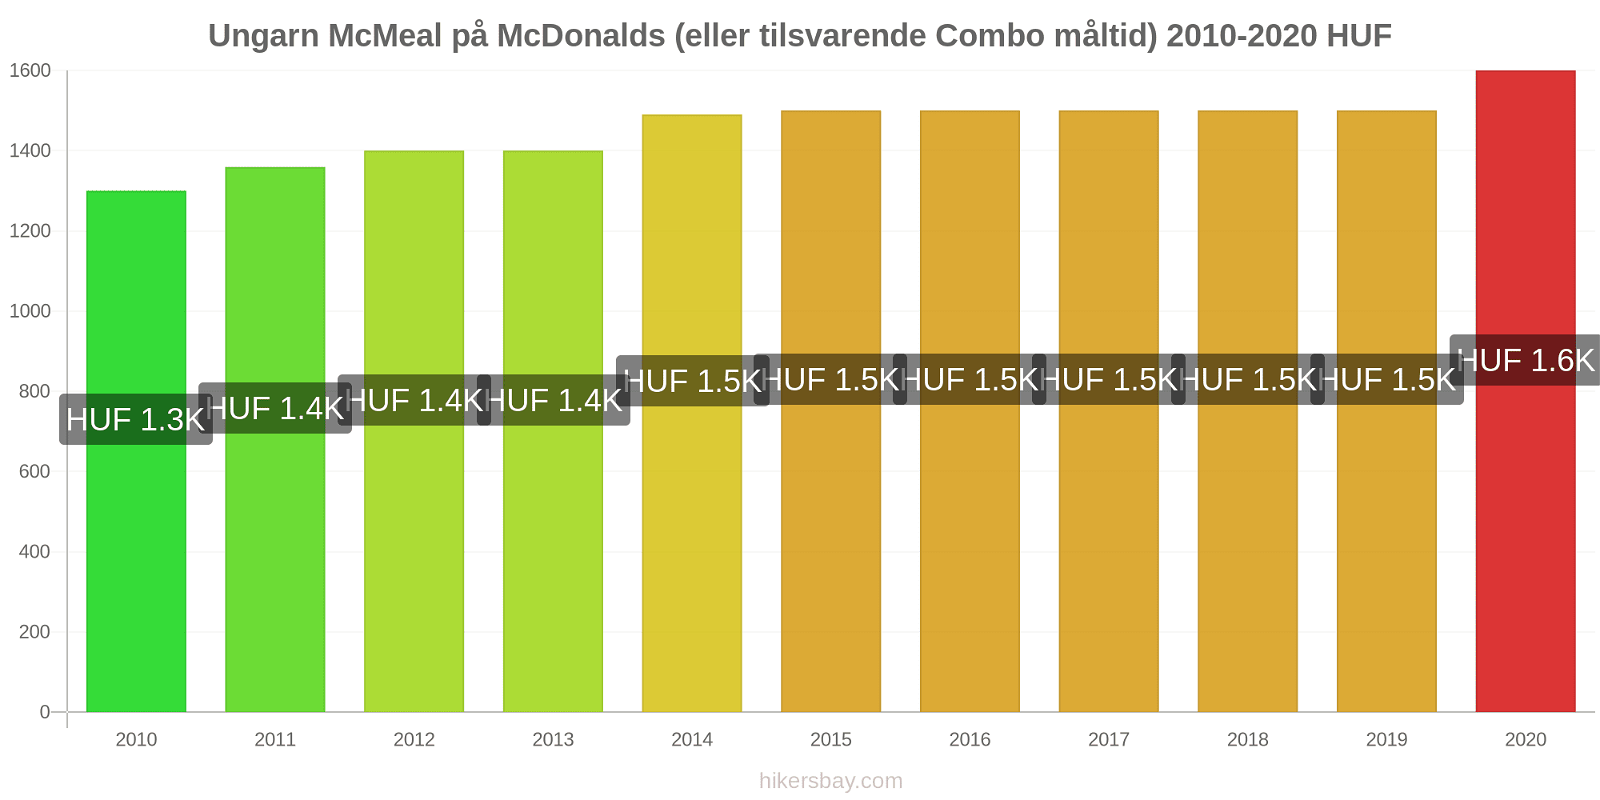 Ungarn prisendringer McMeal på McDonalds (eller tilsvarende Combo måltid) hikersbay.com